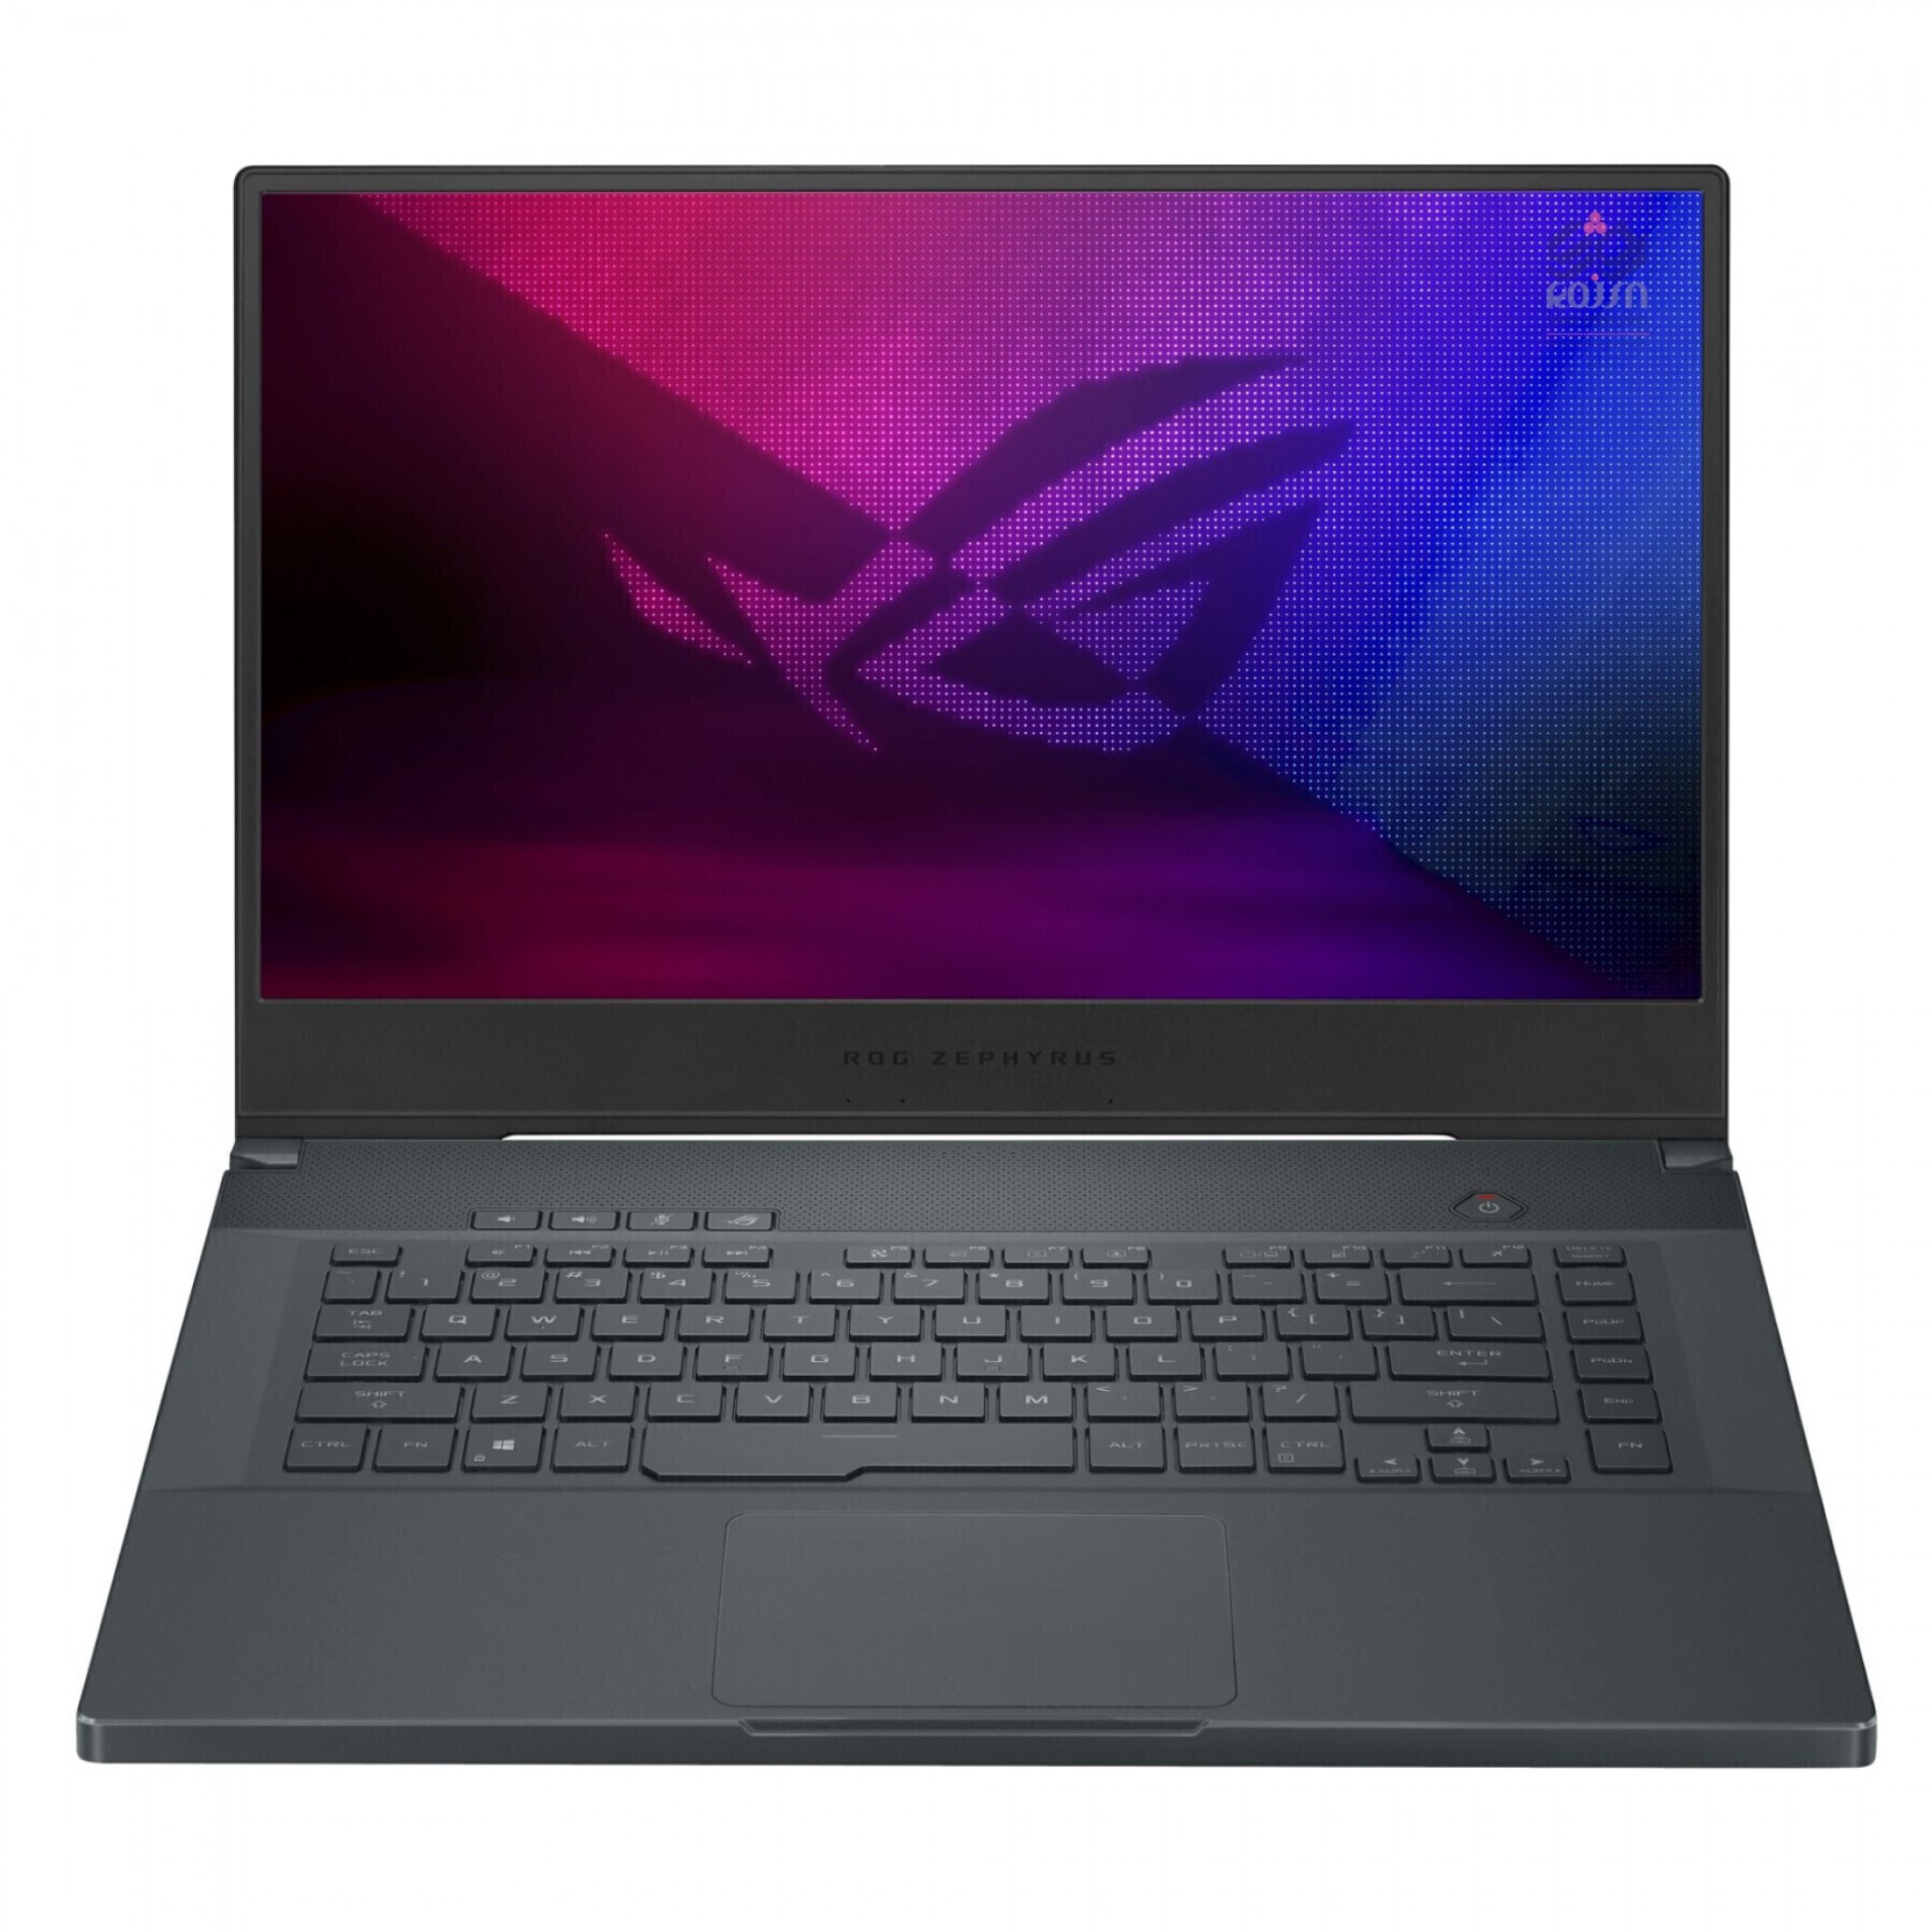  لپ تاپ گیمینگ ایسوس زفیروس M15 مدل GU502DU پردازنده RYZEN 7 3750H | لاکچری لپتاپ 